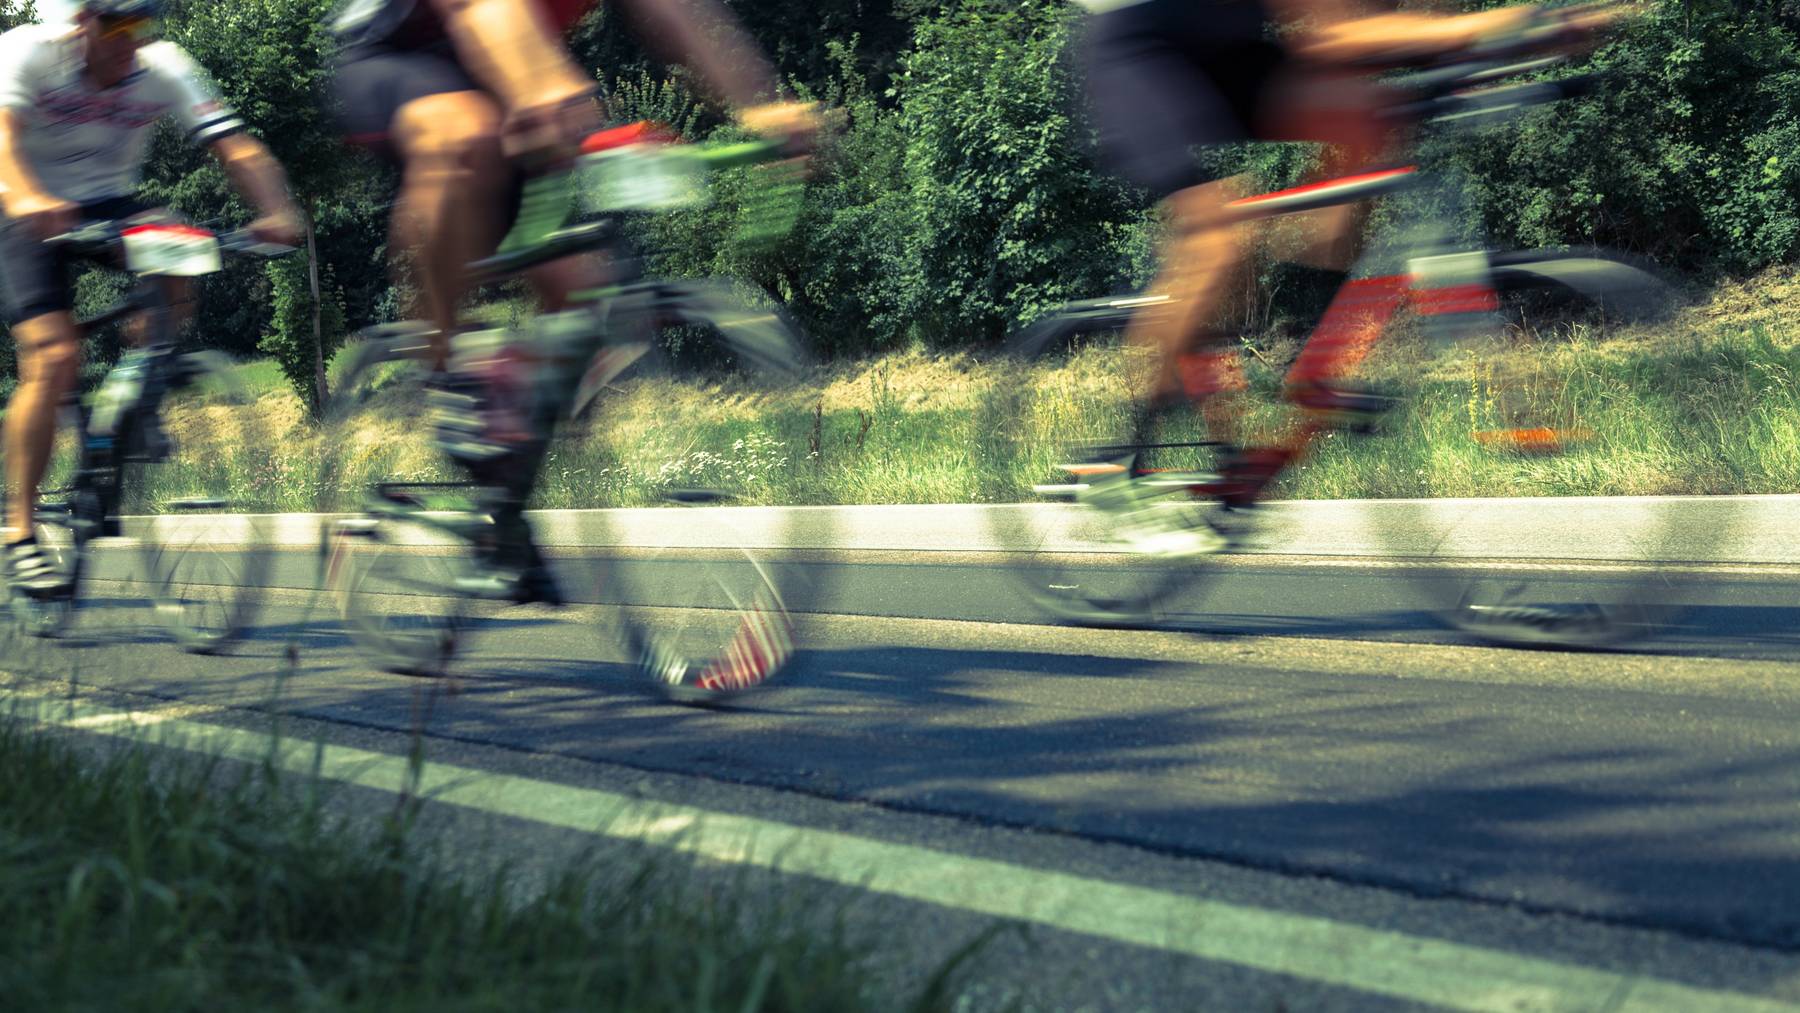 Autofahrer sind genervt: Zwischen Eichberg und Altstätten fahren Radrennfahrer oft auf der Strasse, anstatt auf dem Radweg.